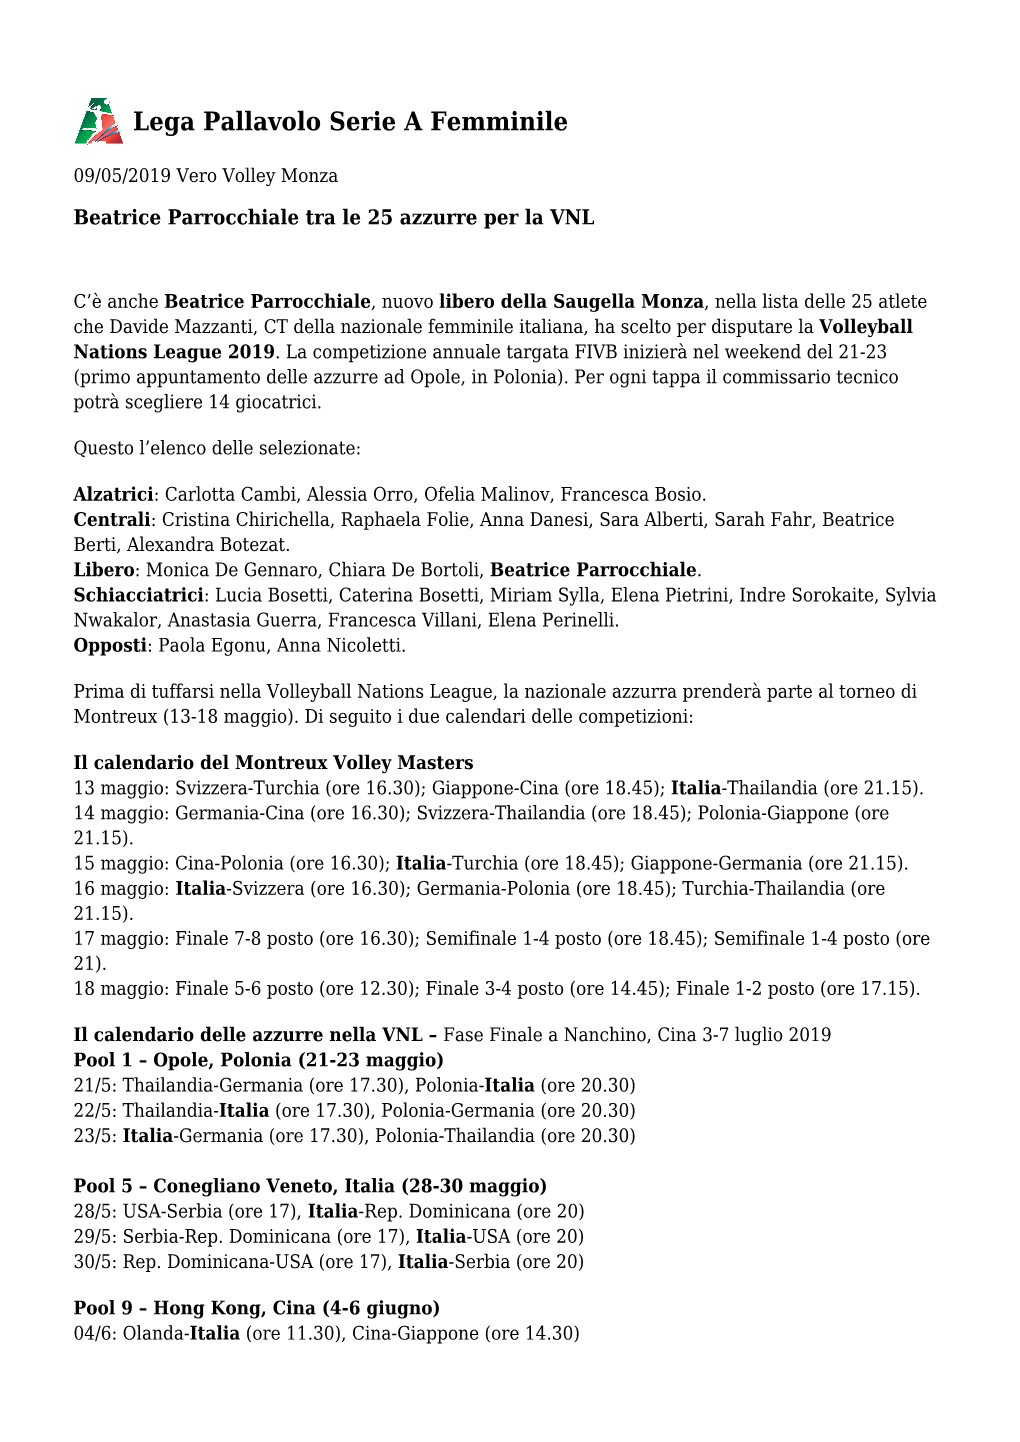 Beatrice Parrocchiale Tra Le 25 Azzurre Per La VNL – Lega Pallavolo Serie